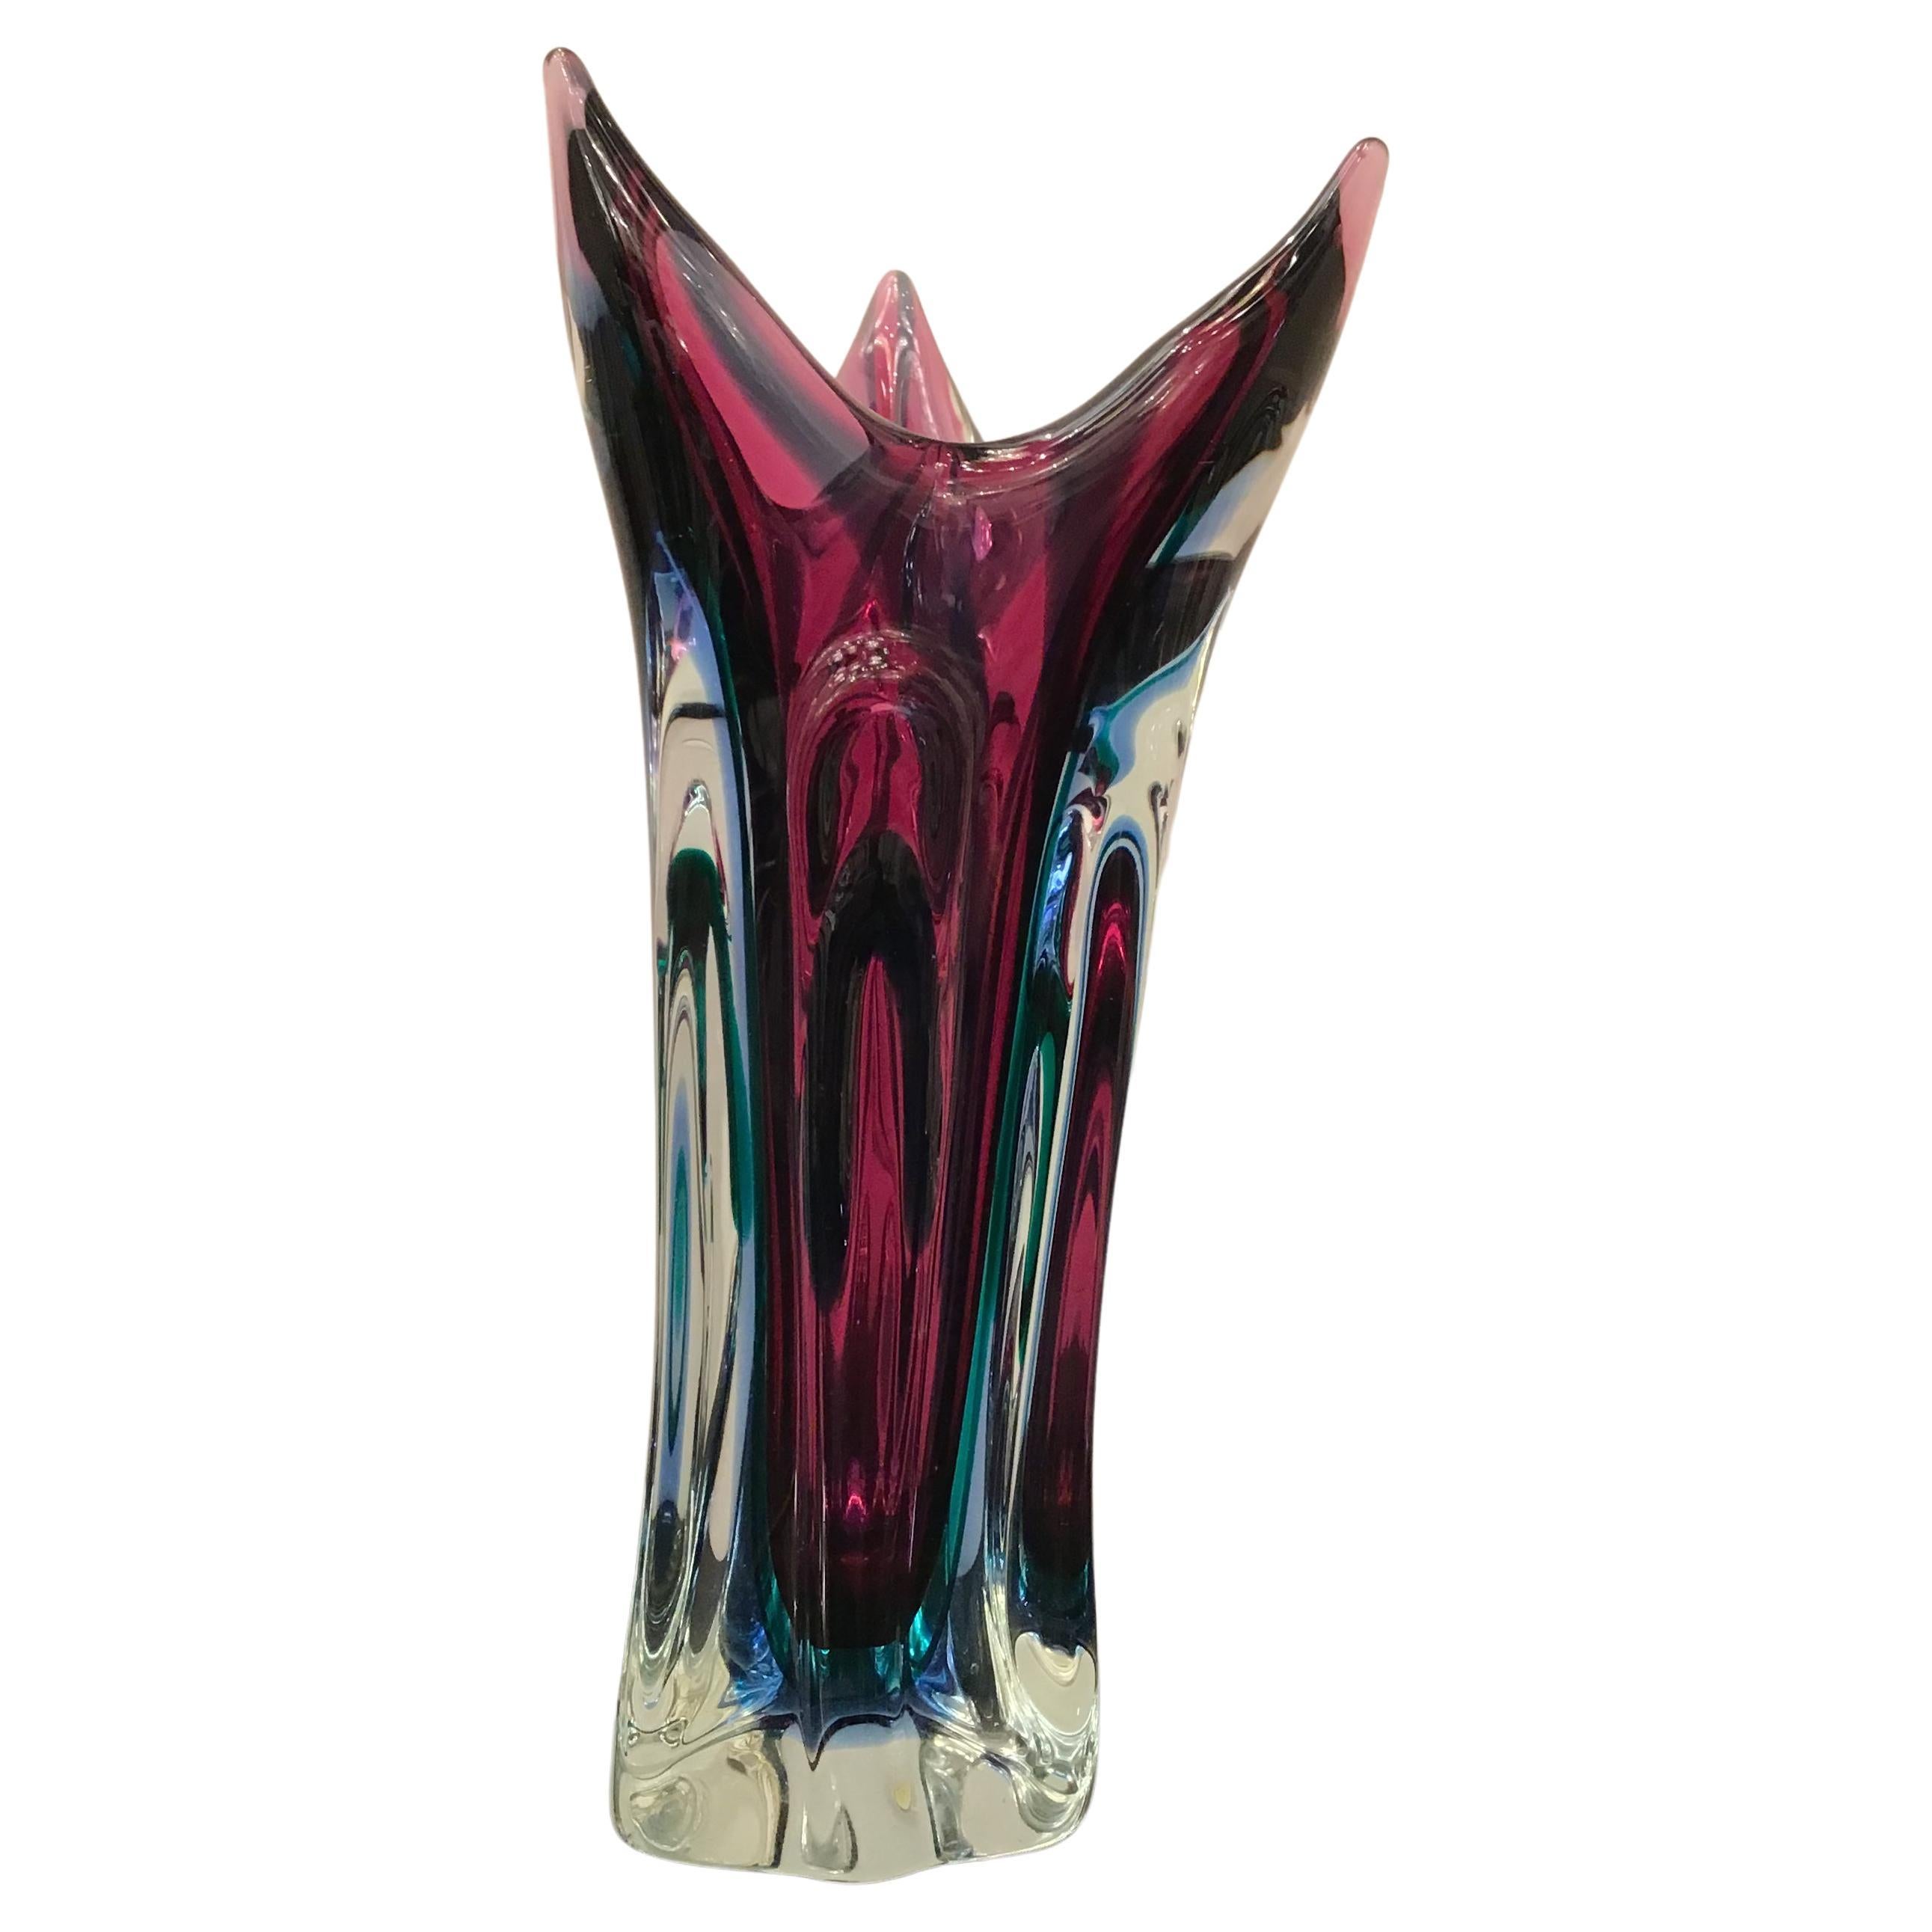 Seguso "Flavio Poli" Vase Murano Glass, 1950, Italy For Sale